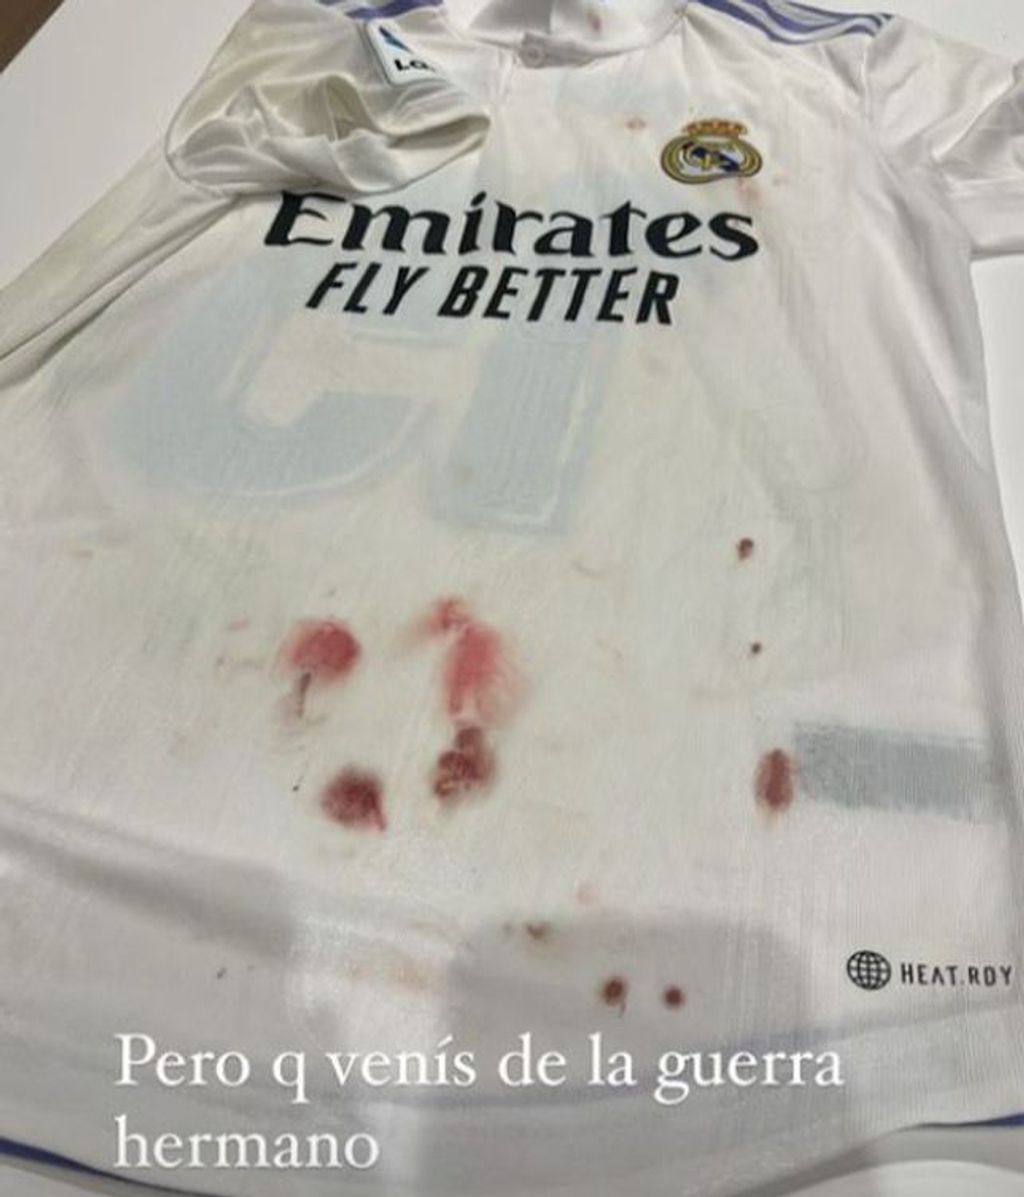 Mina Bonino se asusta al ver la camiseta de Fede Valverde llena de sangre tras el derbi: "Pero qué venís, de la guerra"